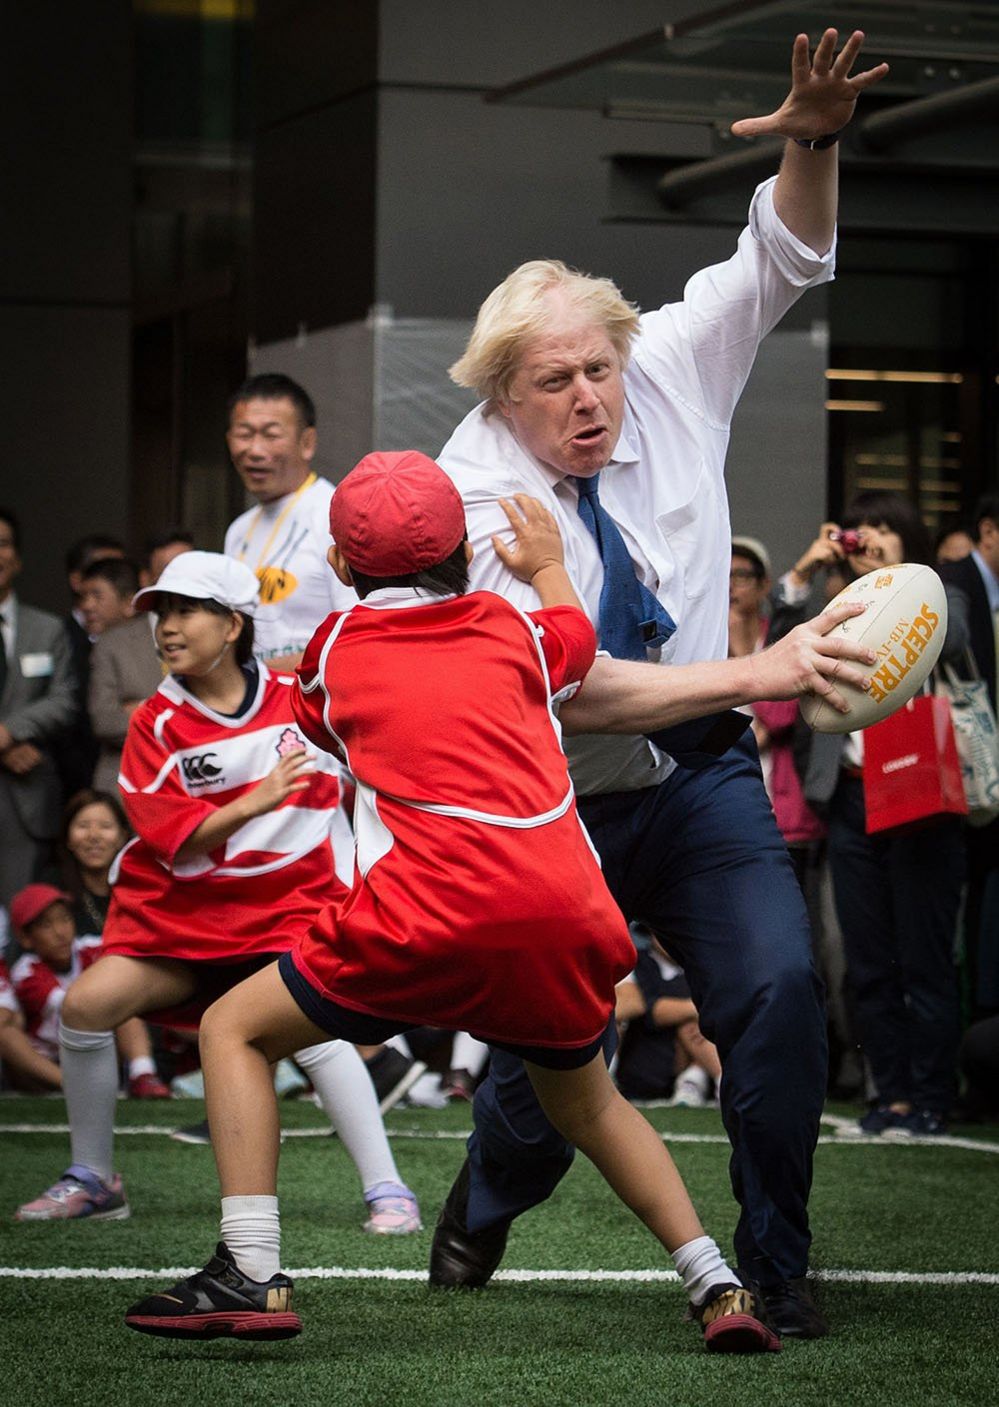 Мэр Лондона Борис Джонсон принял участие в турнире по уличному регби в Токио